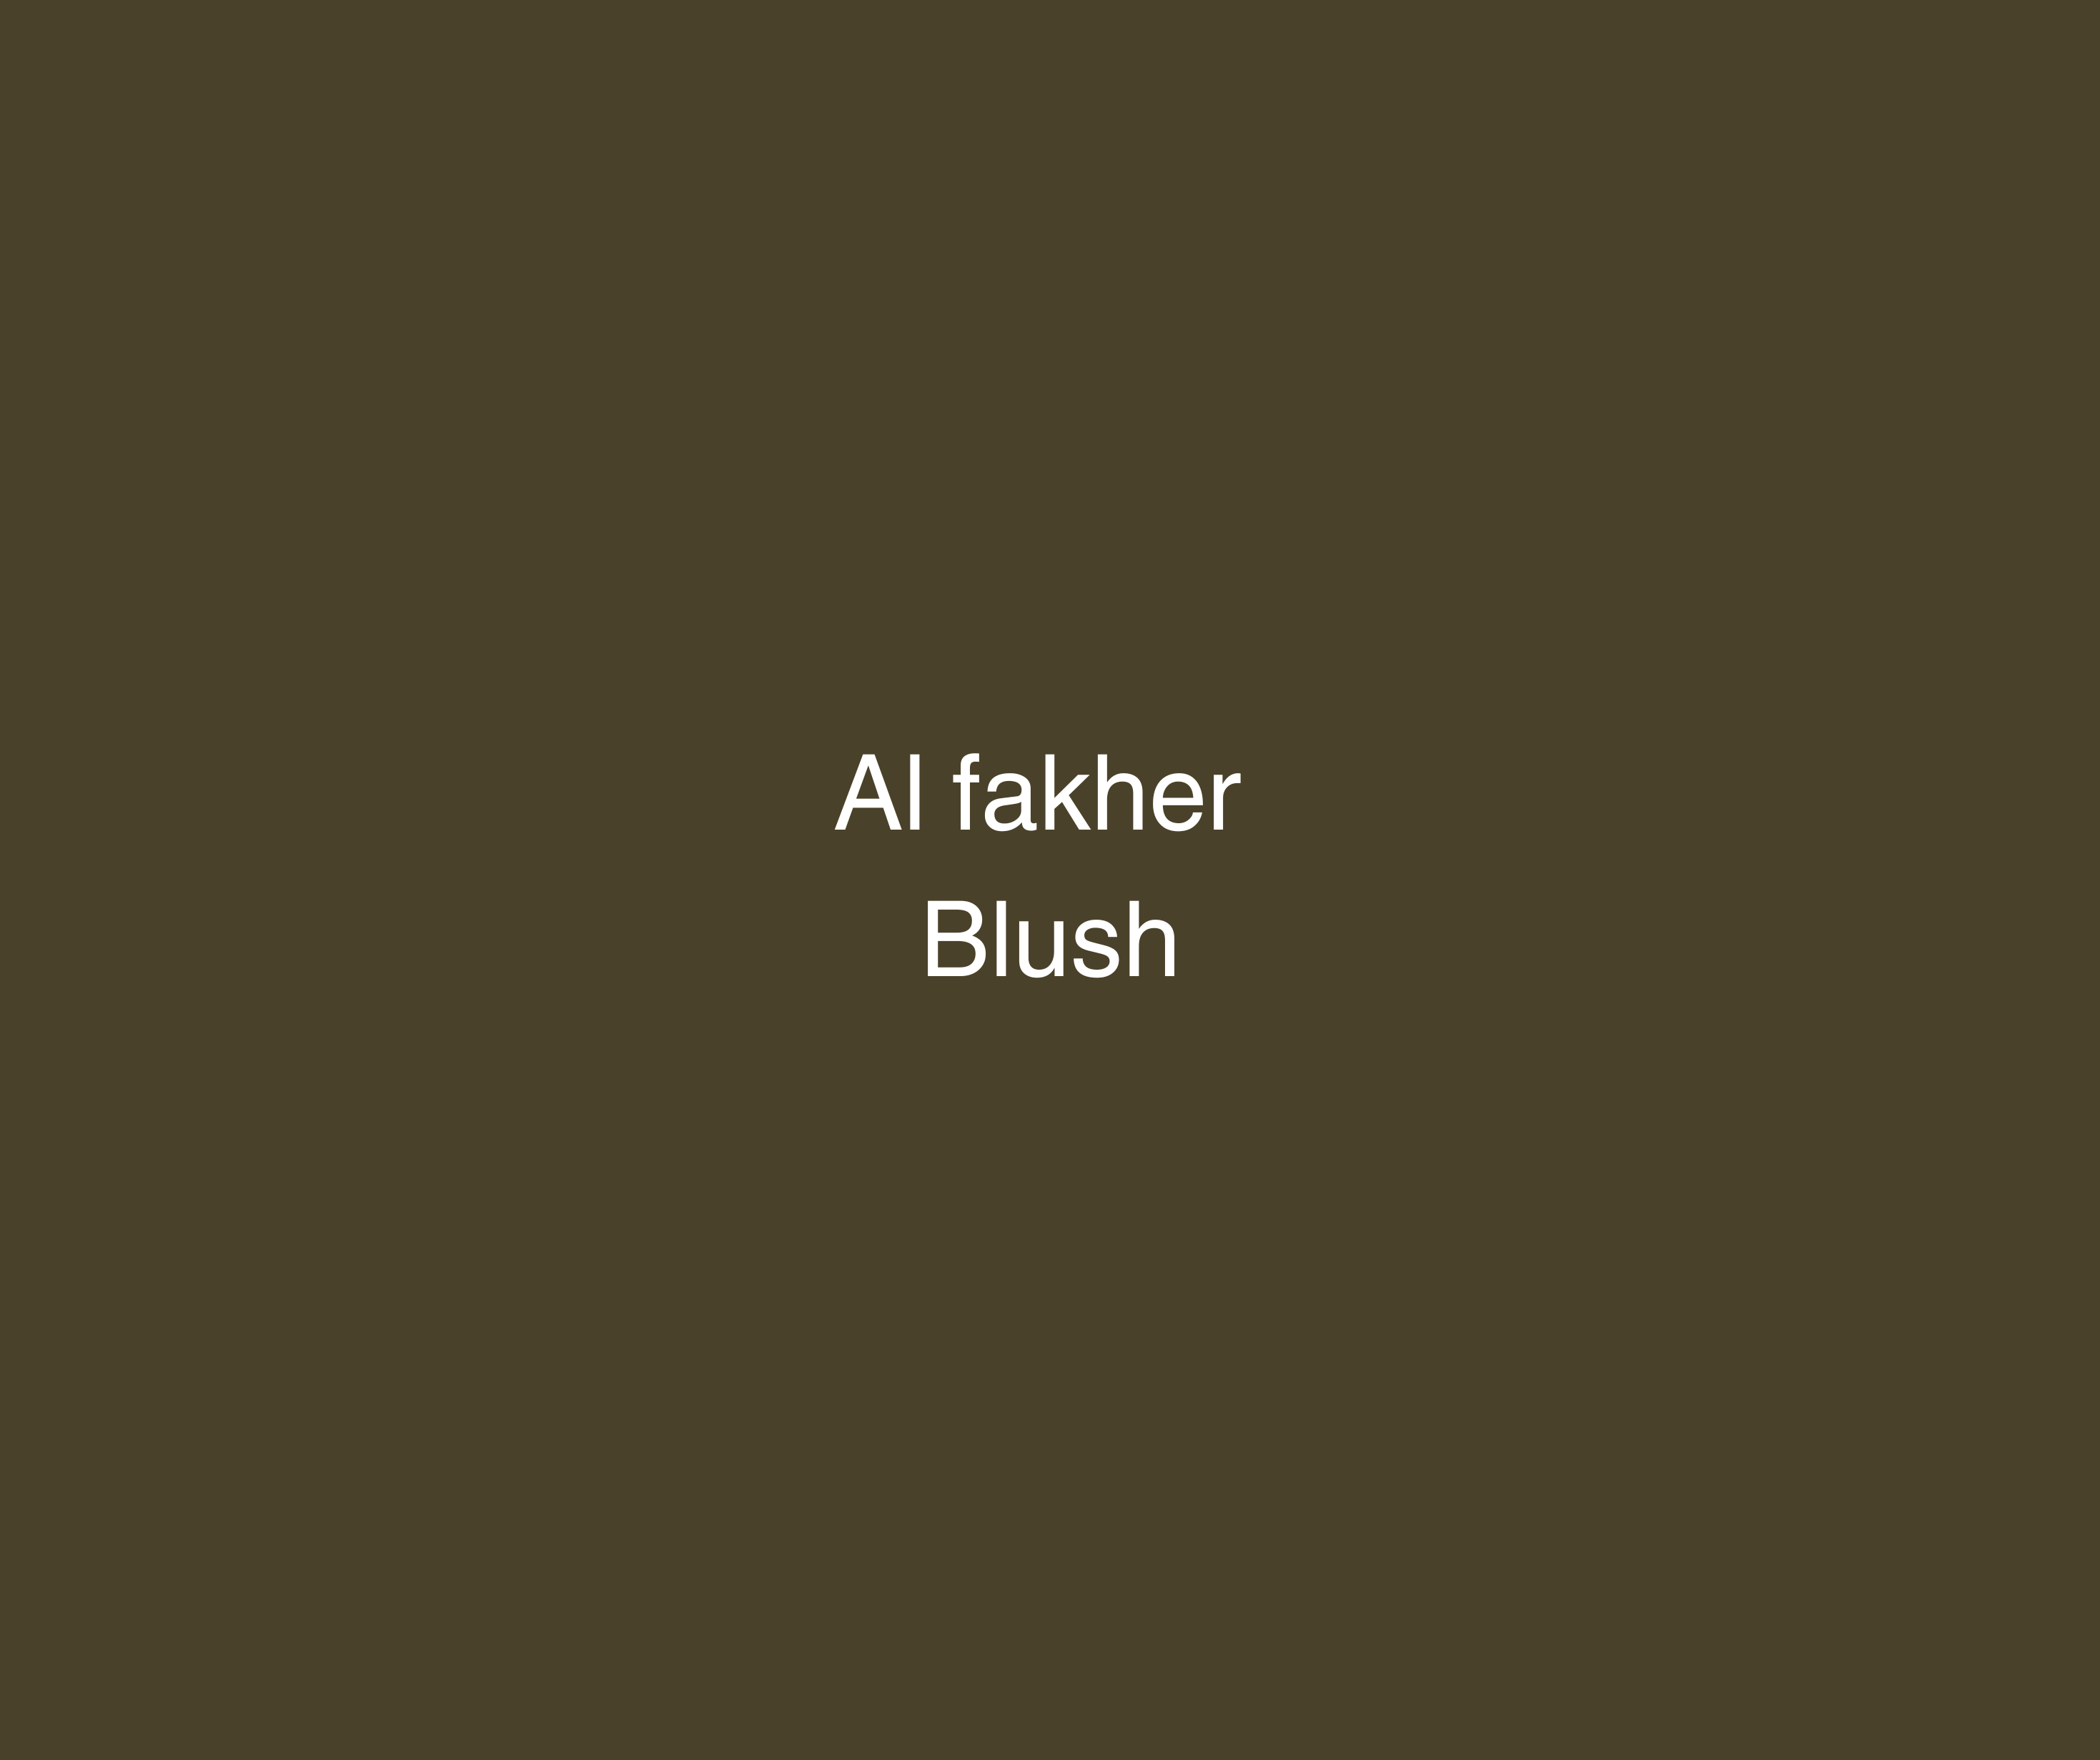 Al Fakher 200g - Blush (Fersken) - Caesar Shisha